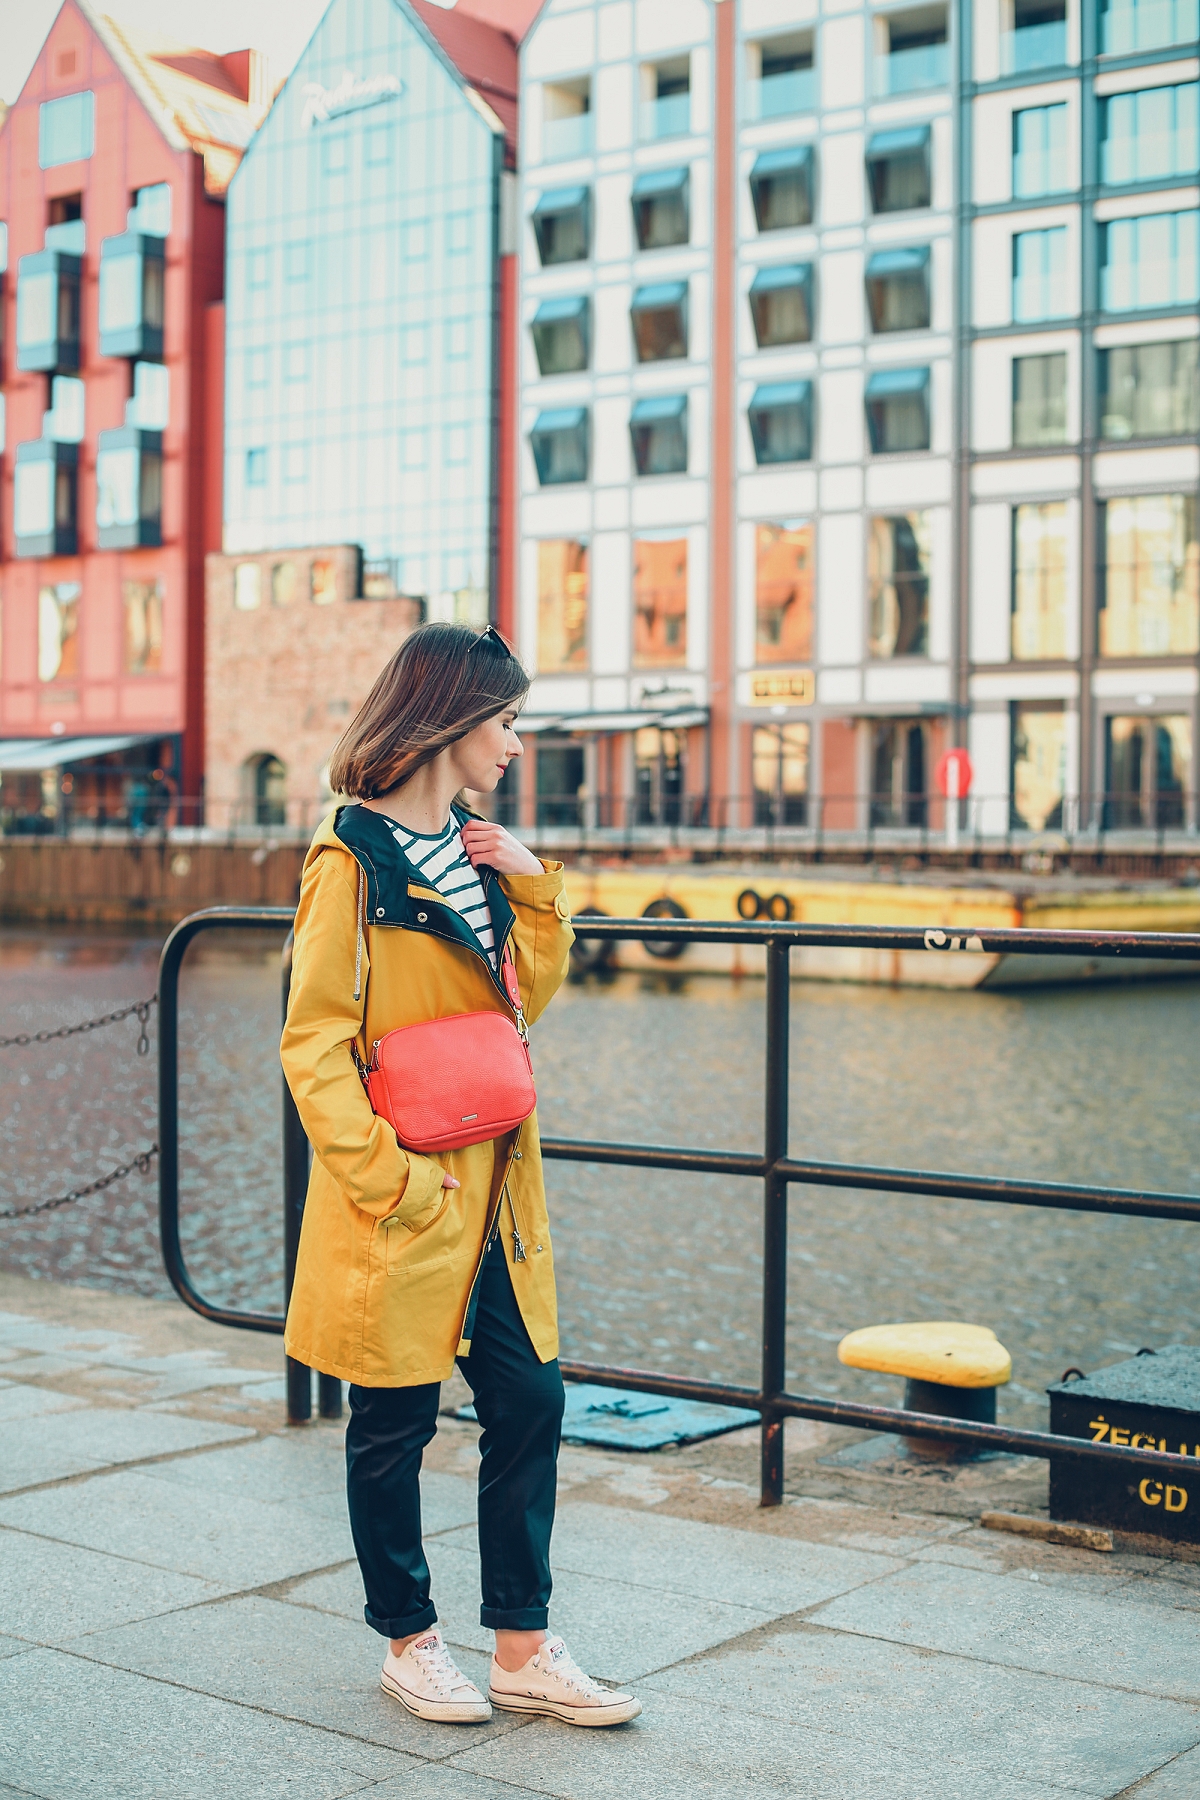 żółty sztormiak przeciwdeszczowa kurtka czerwona torebka stylizacja blog modowy